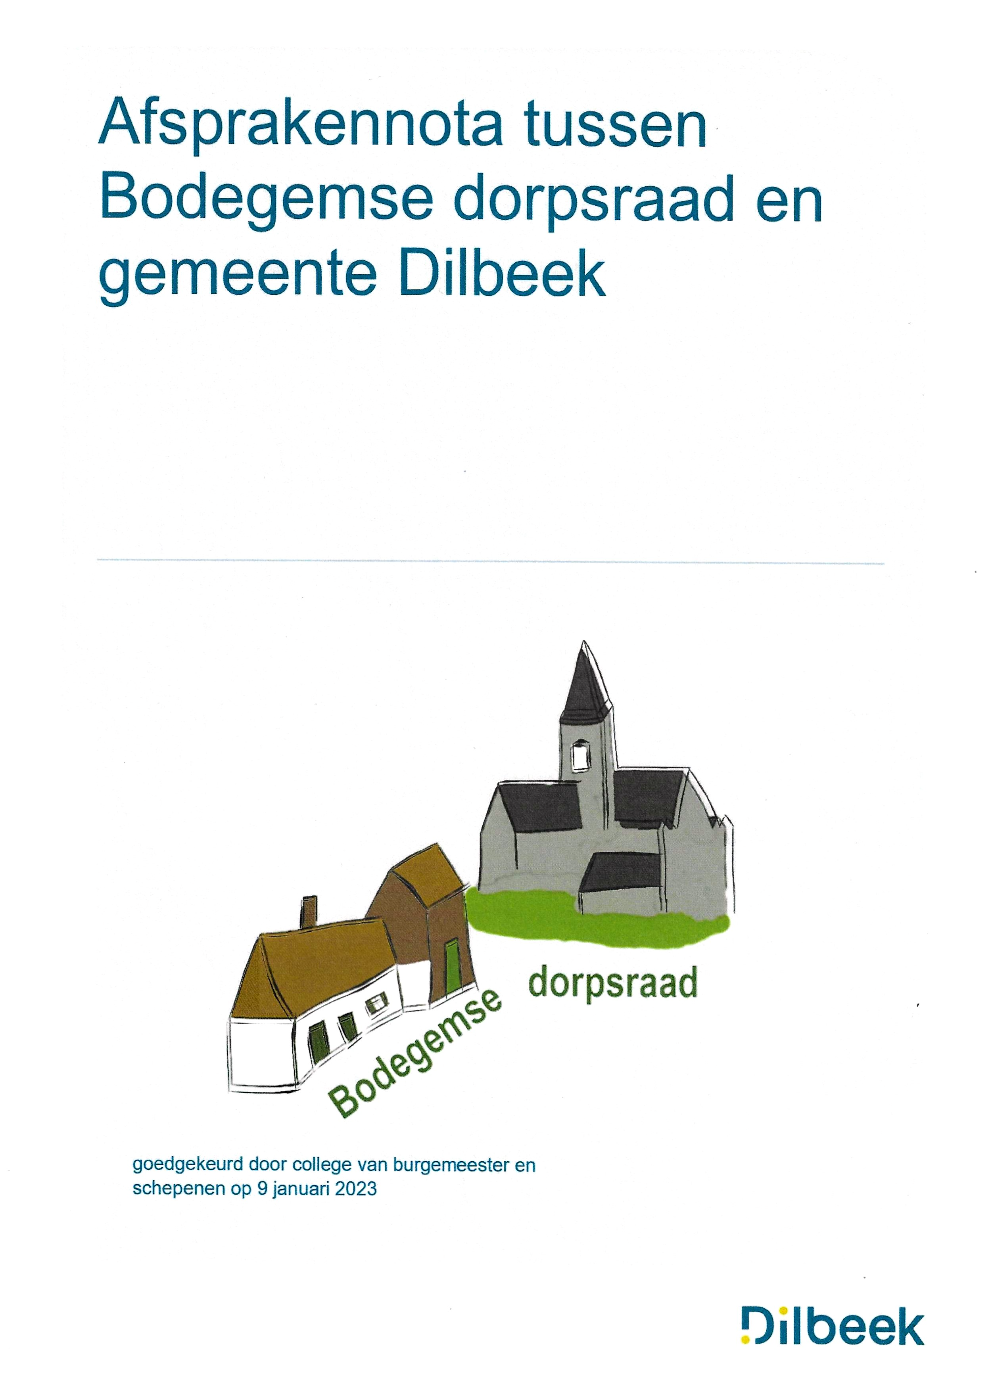 Afsprakennota tussen Bodegemse dorpsraad en gemeente Dilbeek